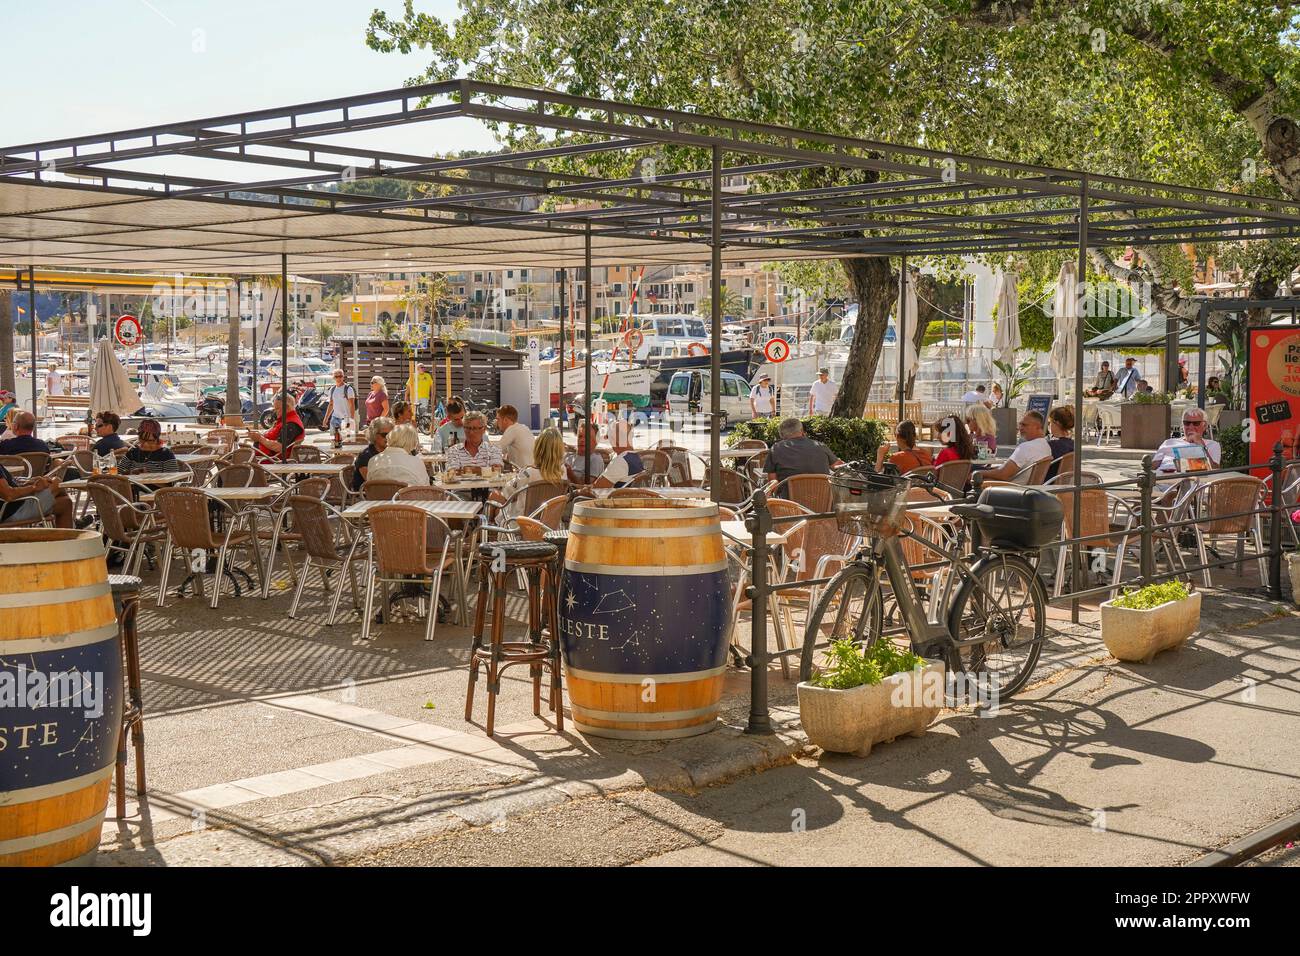 Belebtes Restaurant im Freien neben dem Hafen im historischen Zentrum von Puerto Soller, Balearen, Mallorca, Spanien. Stockfoto